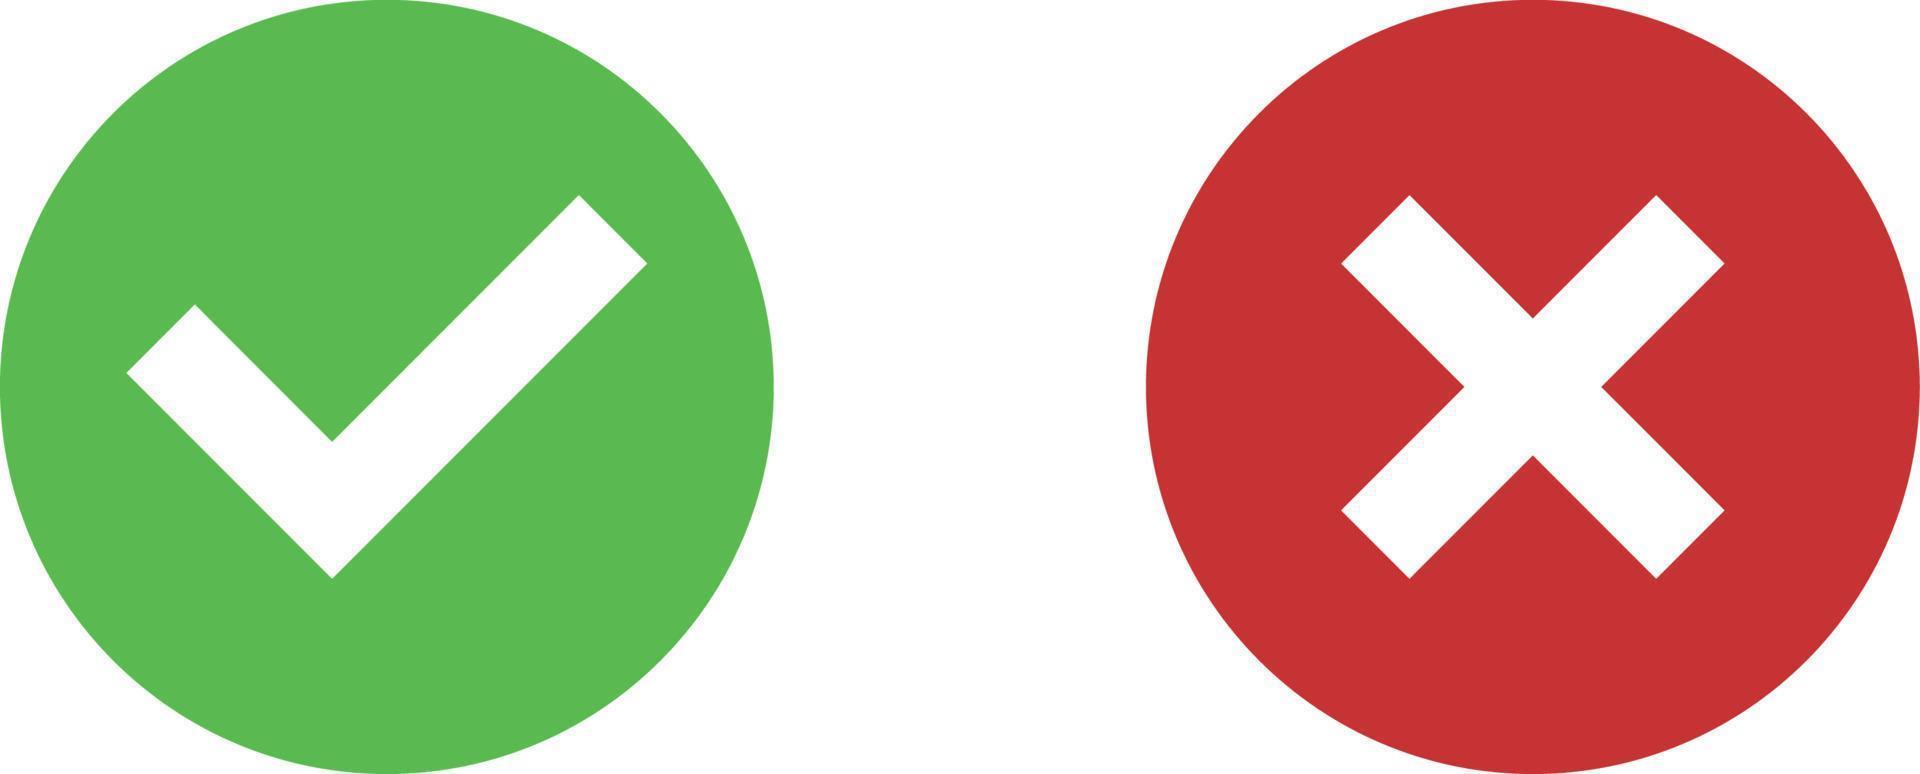 cruz vermelha e marca de seleção verde vetor